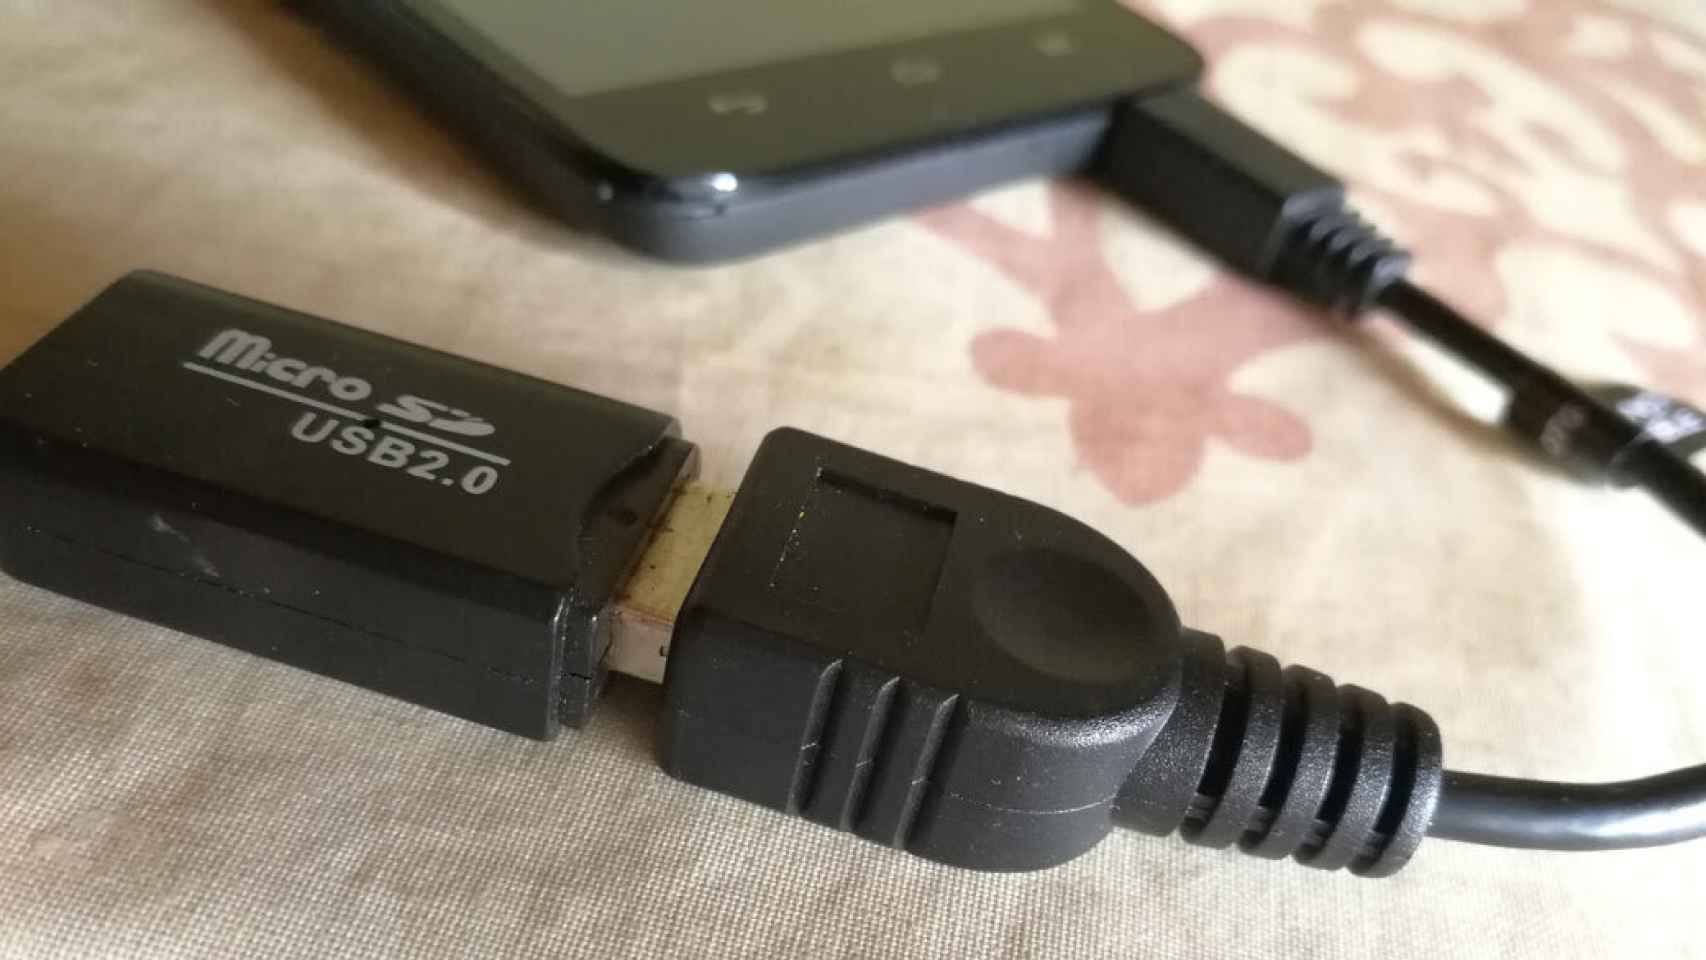 Cómo saber si tu móvil tiene USB OTG, todos los pasos